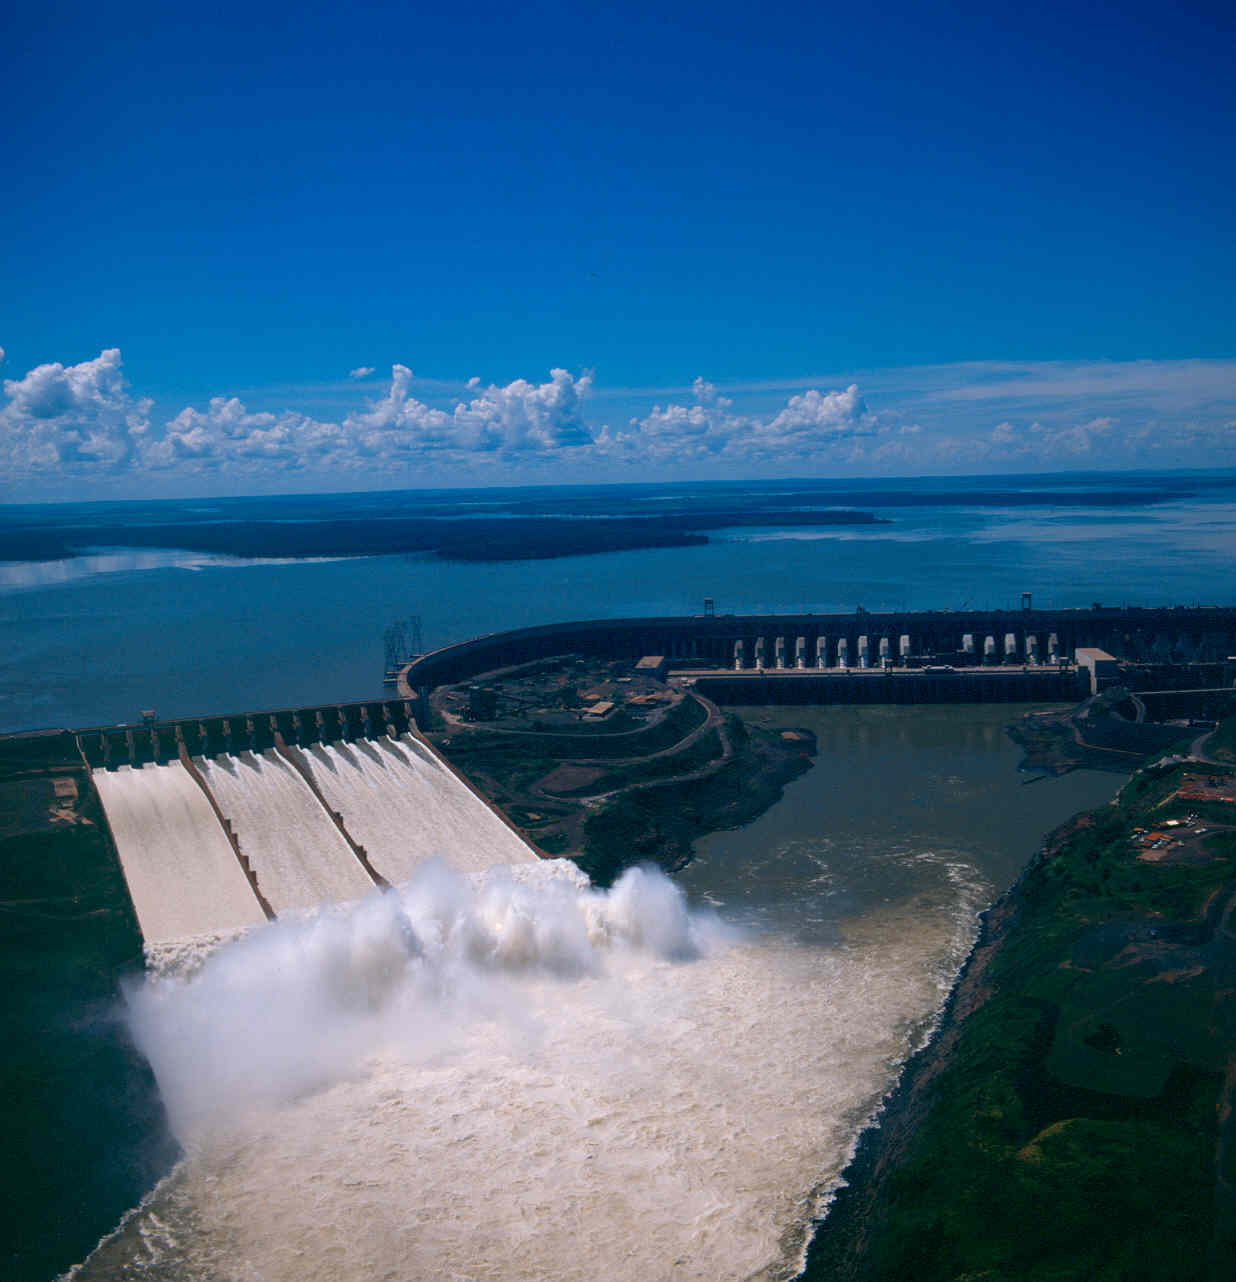 Люди перегородили реку большой плотиной вода выше. Итайпу Бразилия ГЭС. Итайпу, Парагвай/Бразилия. Плотина Итайпу в Бразилии. Гидроэлектростанция Итайпу.